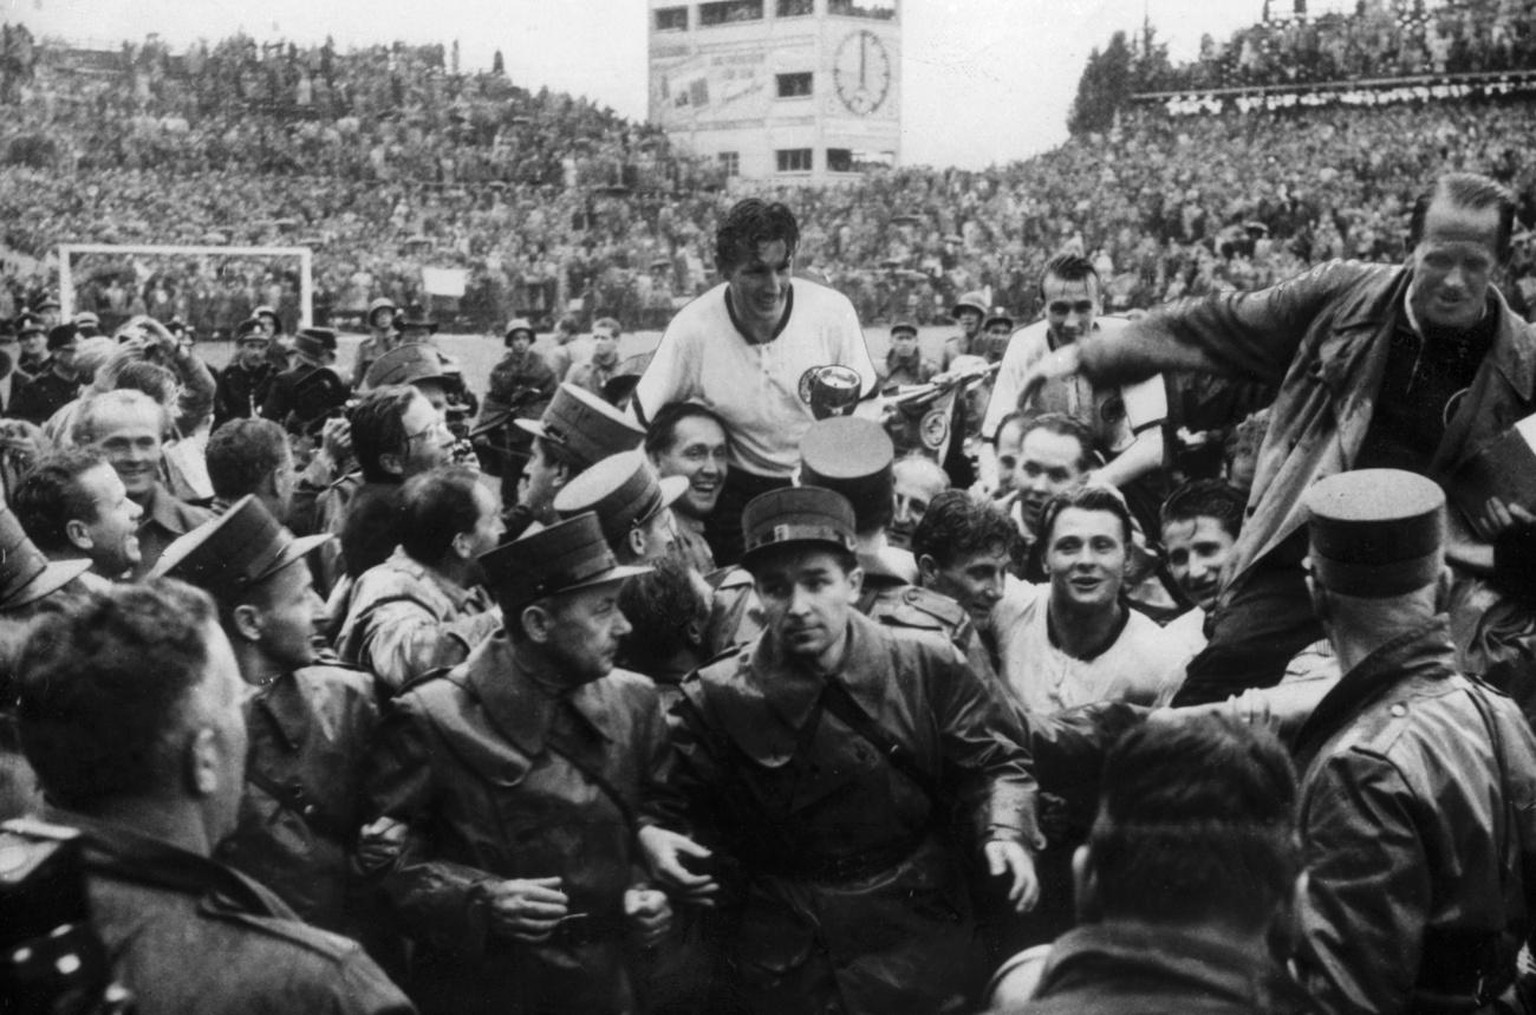 Nach dem WM-Finalspiel am 4. Juli 1954 in Bern werden der deutsche Captain Fritz Walter, Mitte, und Trainer Sepp Herberger, rechts, im Triumph auf den Schultern von begeisterten Anhaengern vom Spielfe ...